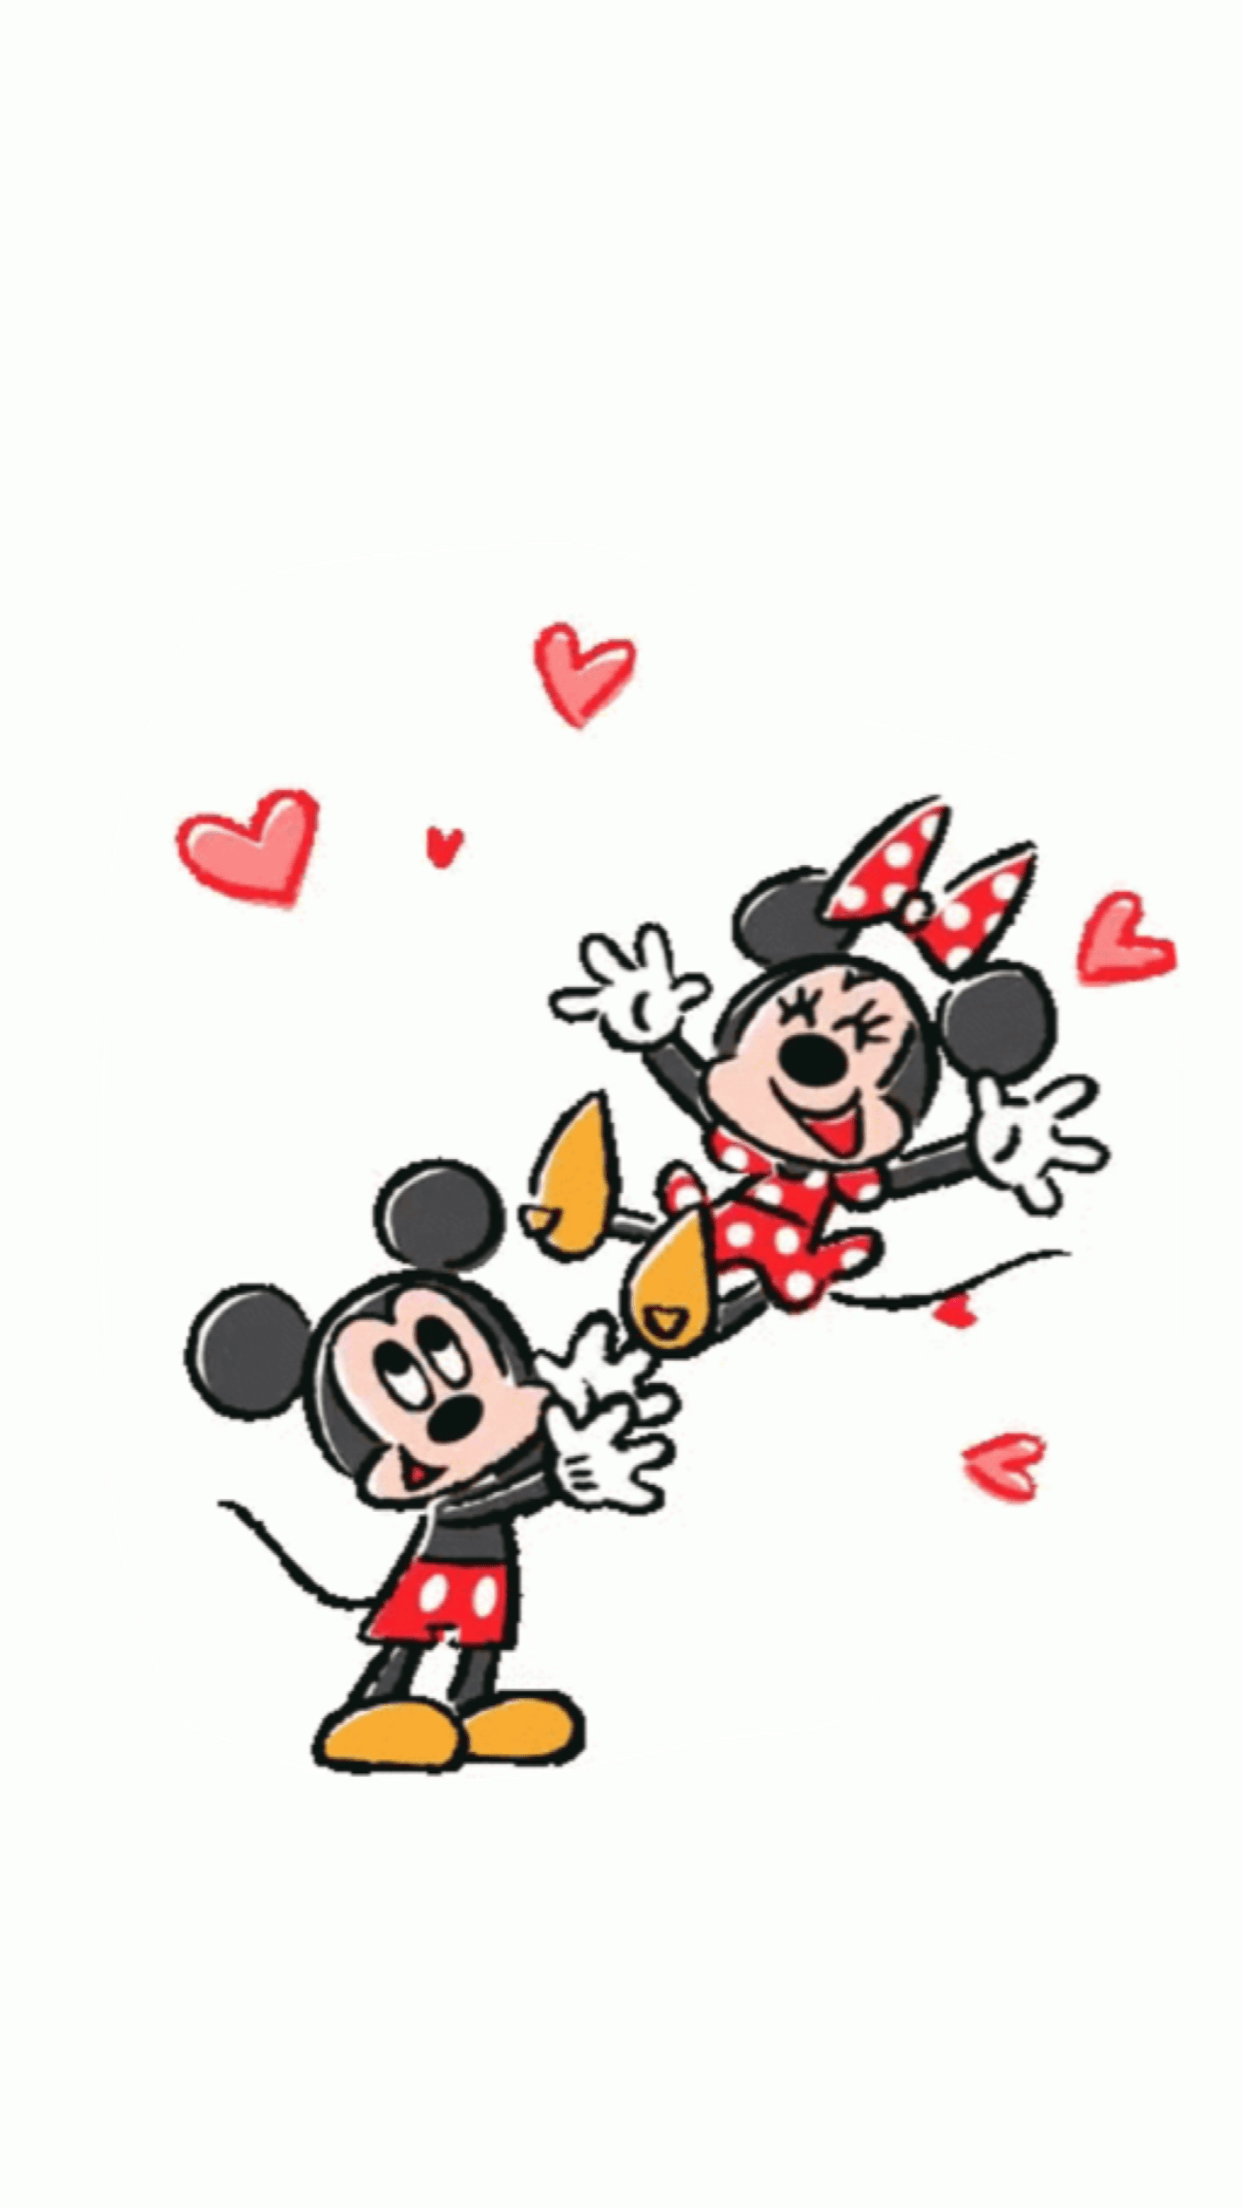 Bạn đang tìm kiếm hình nền đáng yêu cho điện thoại của mình? Hãy xem qua bộ sưu tập hình nền Mickey Mouse đáng yêu mà chúng tôi đang giới thiệu. Với những hình ảnh Mickey và những người bạn đáng yêu, tươi vui, bạn chắc chắn sẽ tìm được bức hình nền yêu thích của mình.